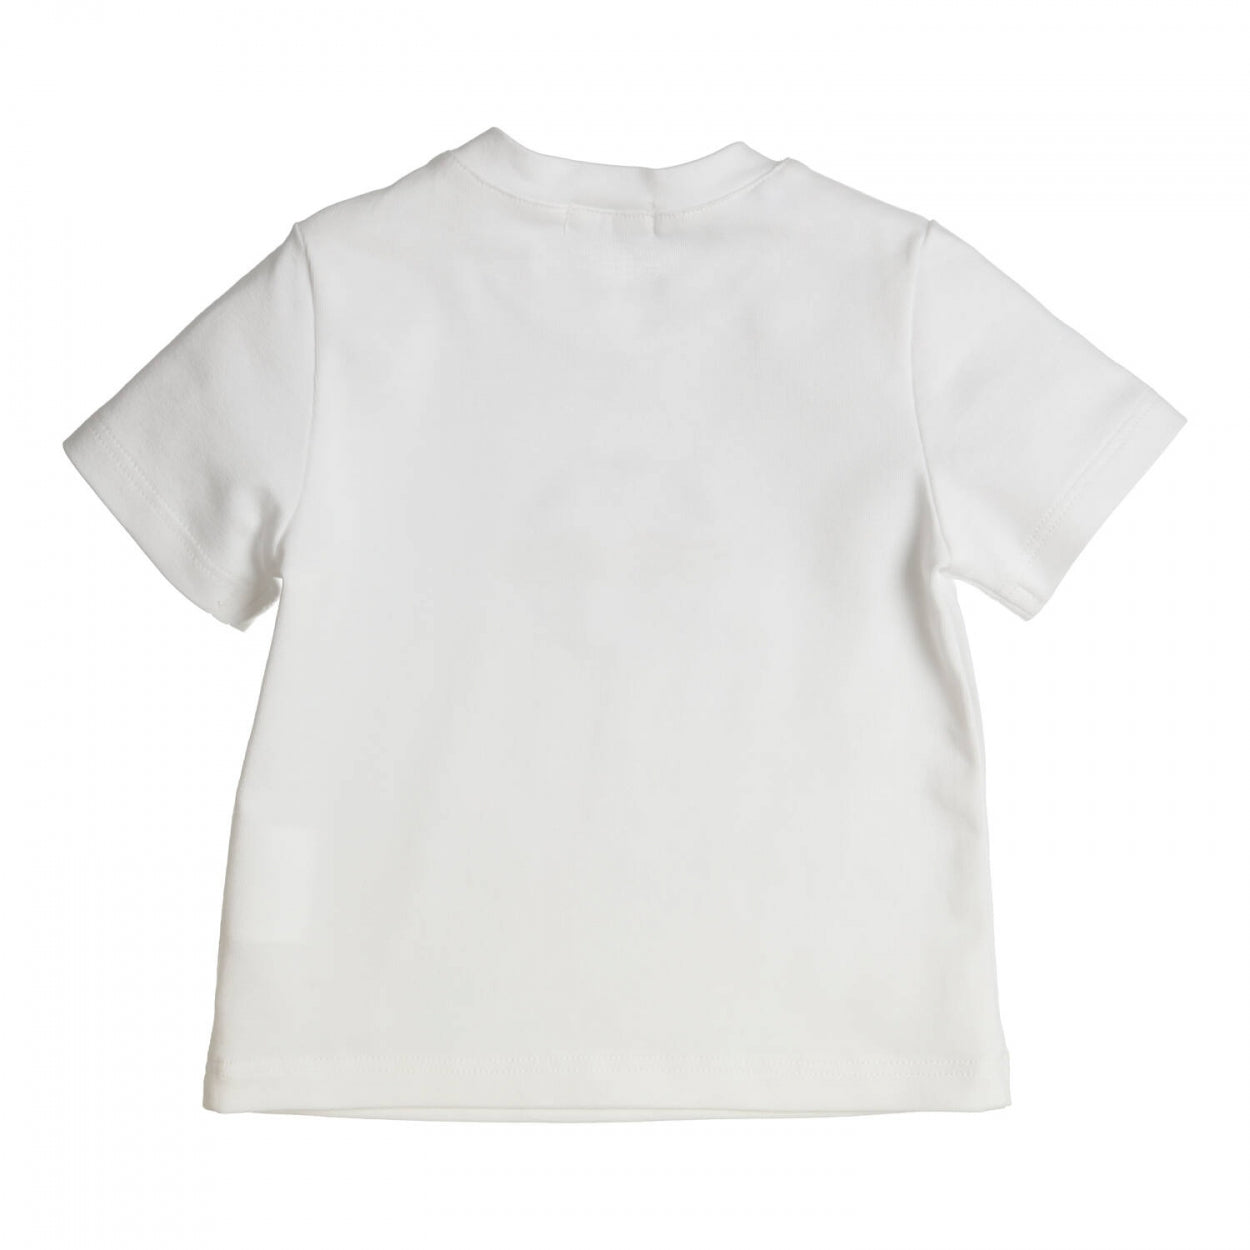 Jongens T-shirt Aerobic van Gymp in de kleur White in maat 86.